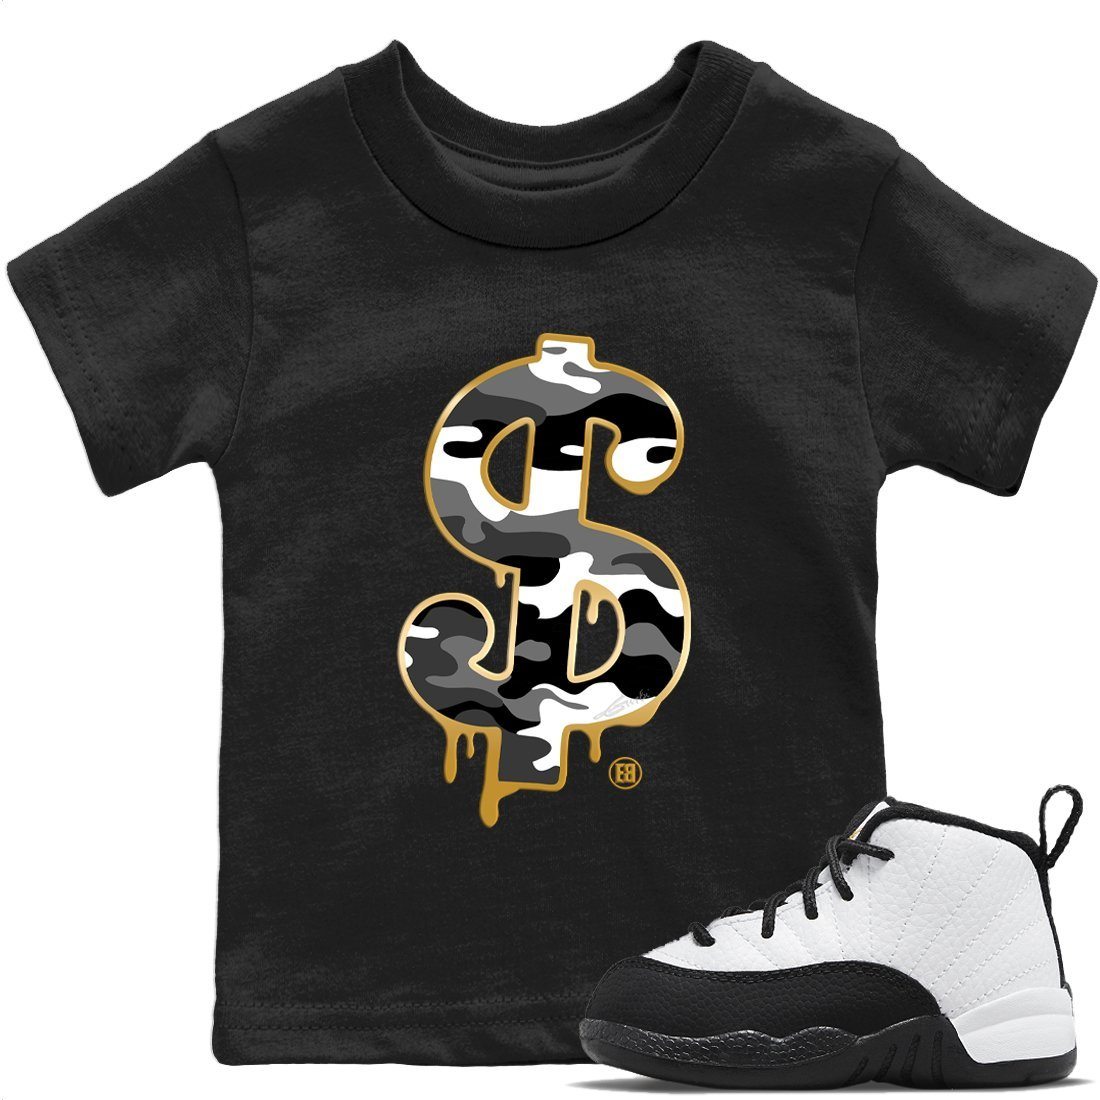 Jordan 12 Royalty Sneaker Match Tees Dollar Camo Sneaker Tees Jordan 12 Royalty Sneaker Release Tees Kids Shirts